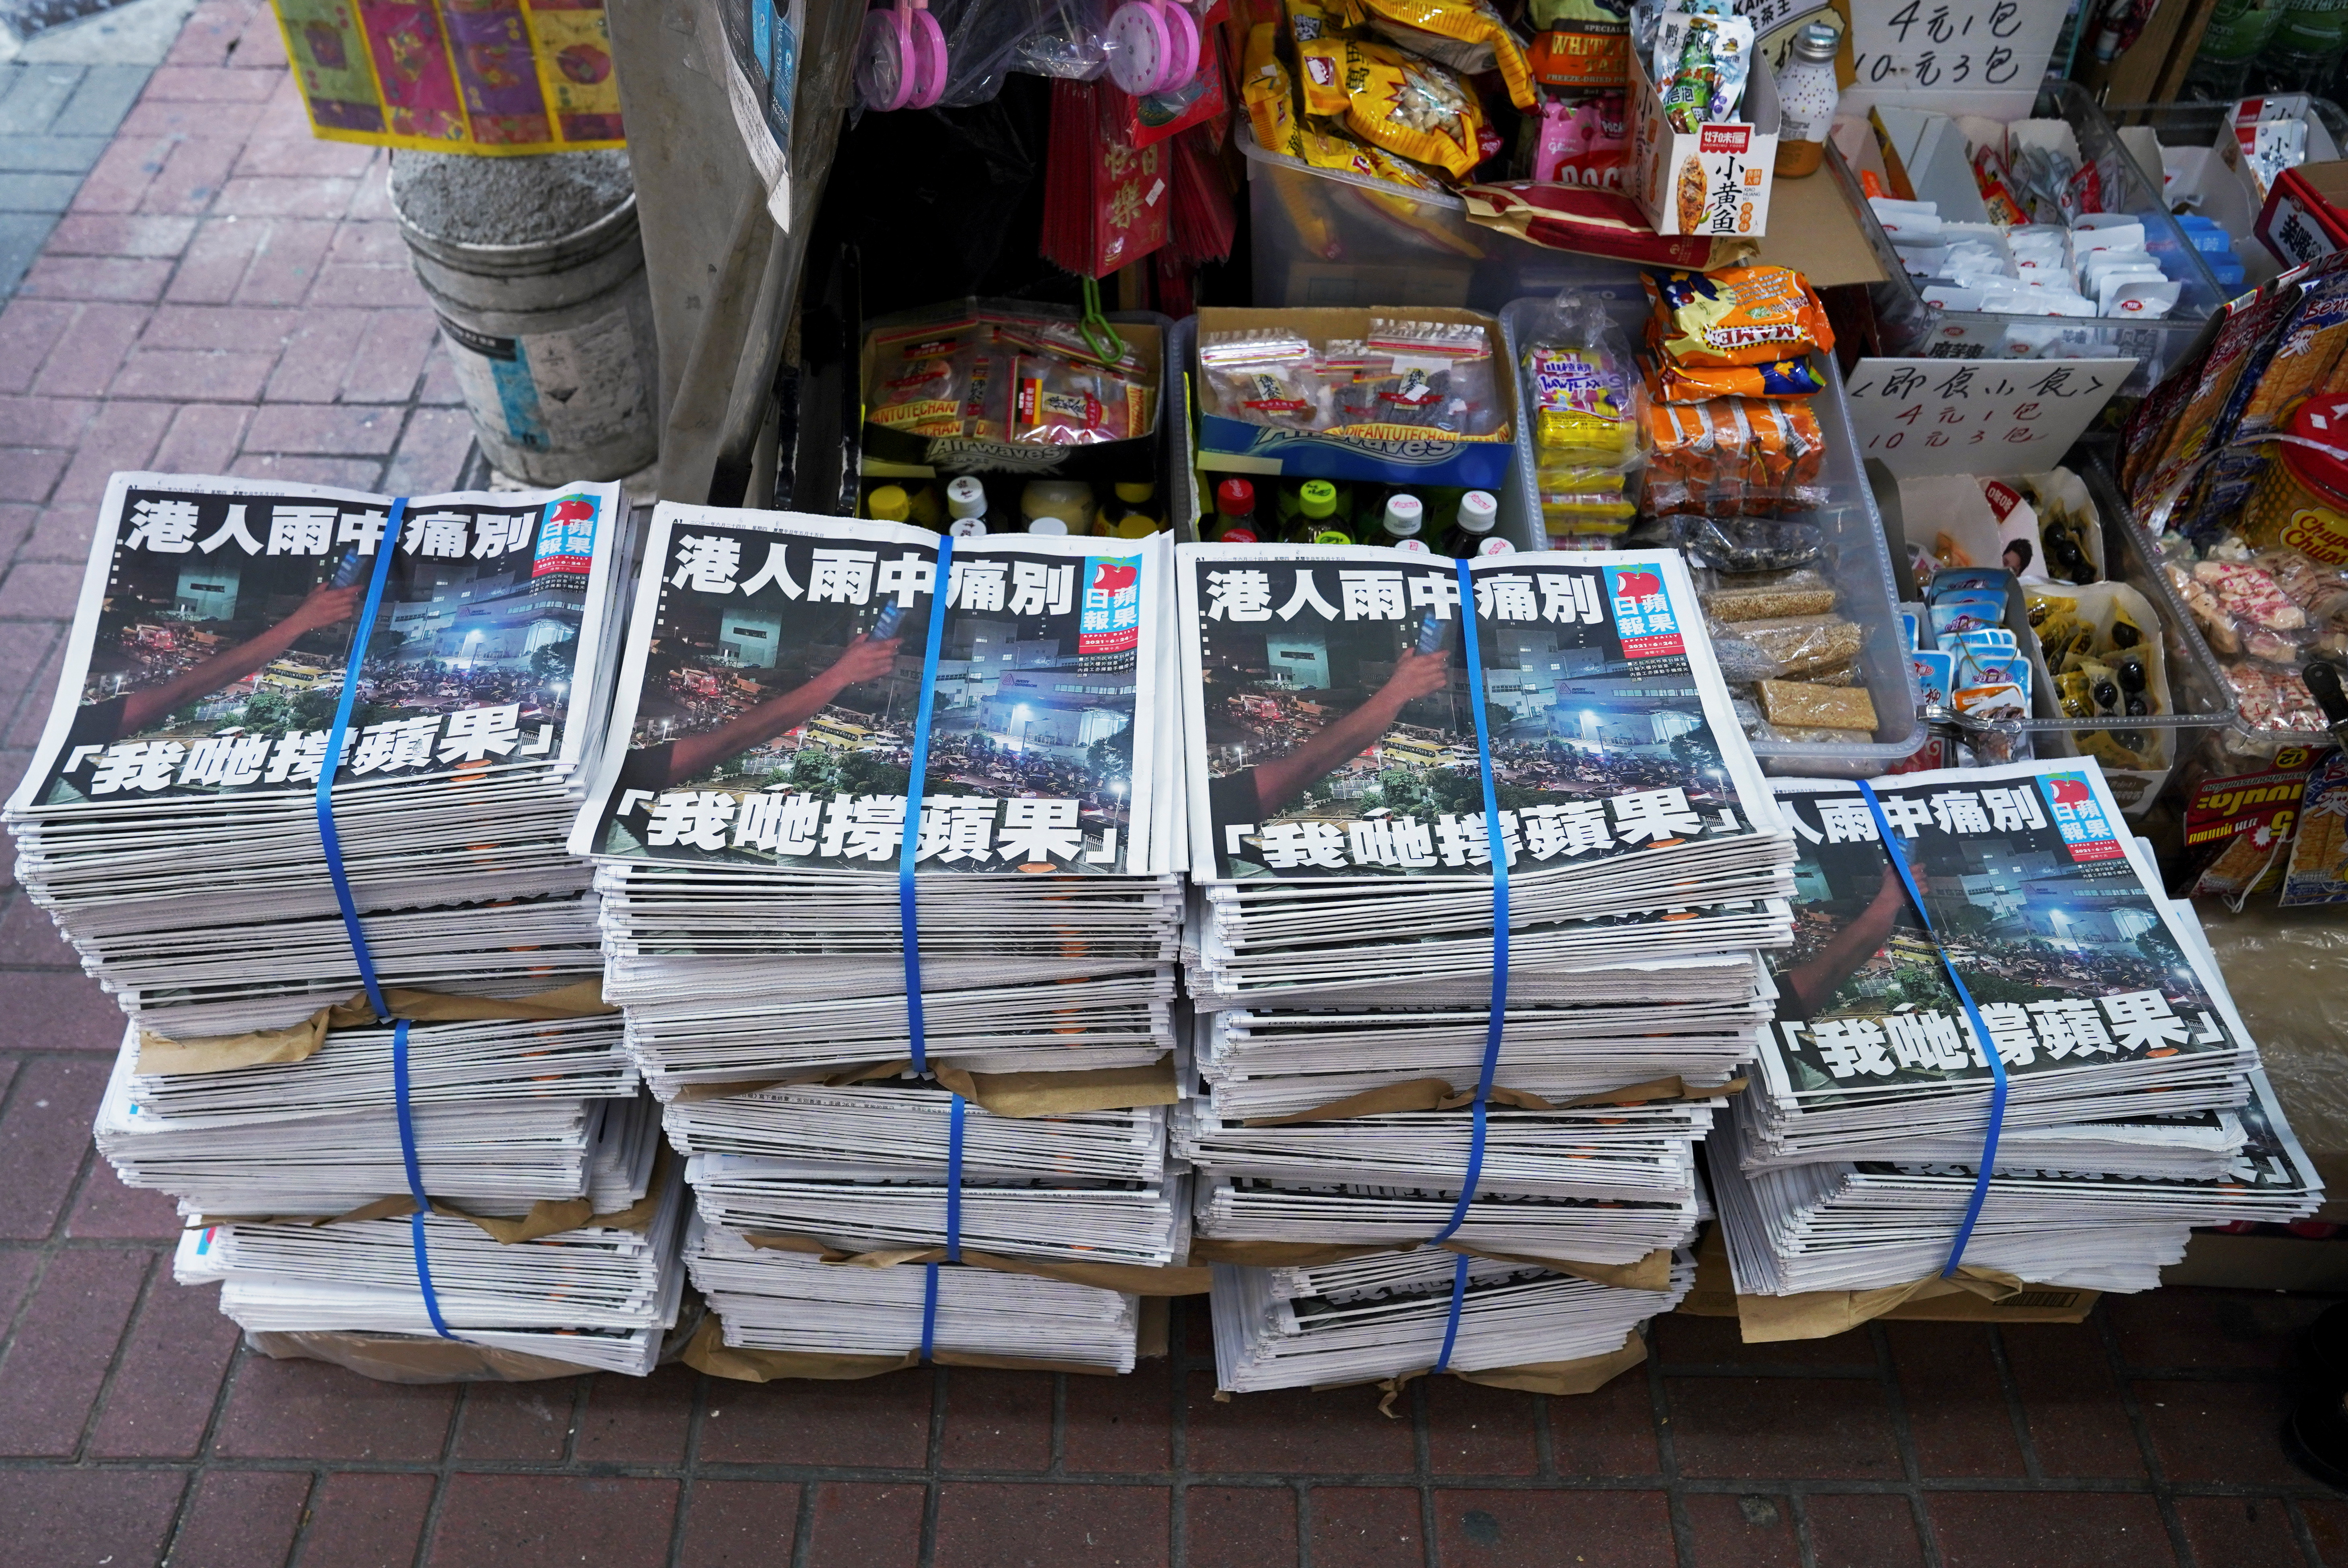 Copias de la última edición del Apple Daily. REUTERS/Lam Yik